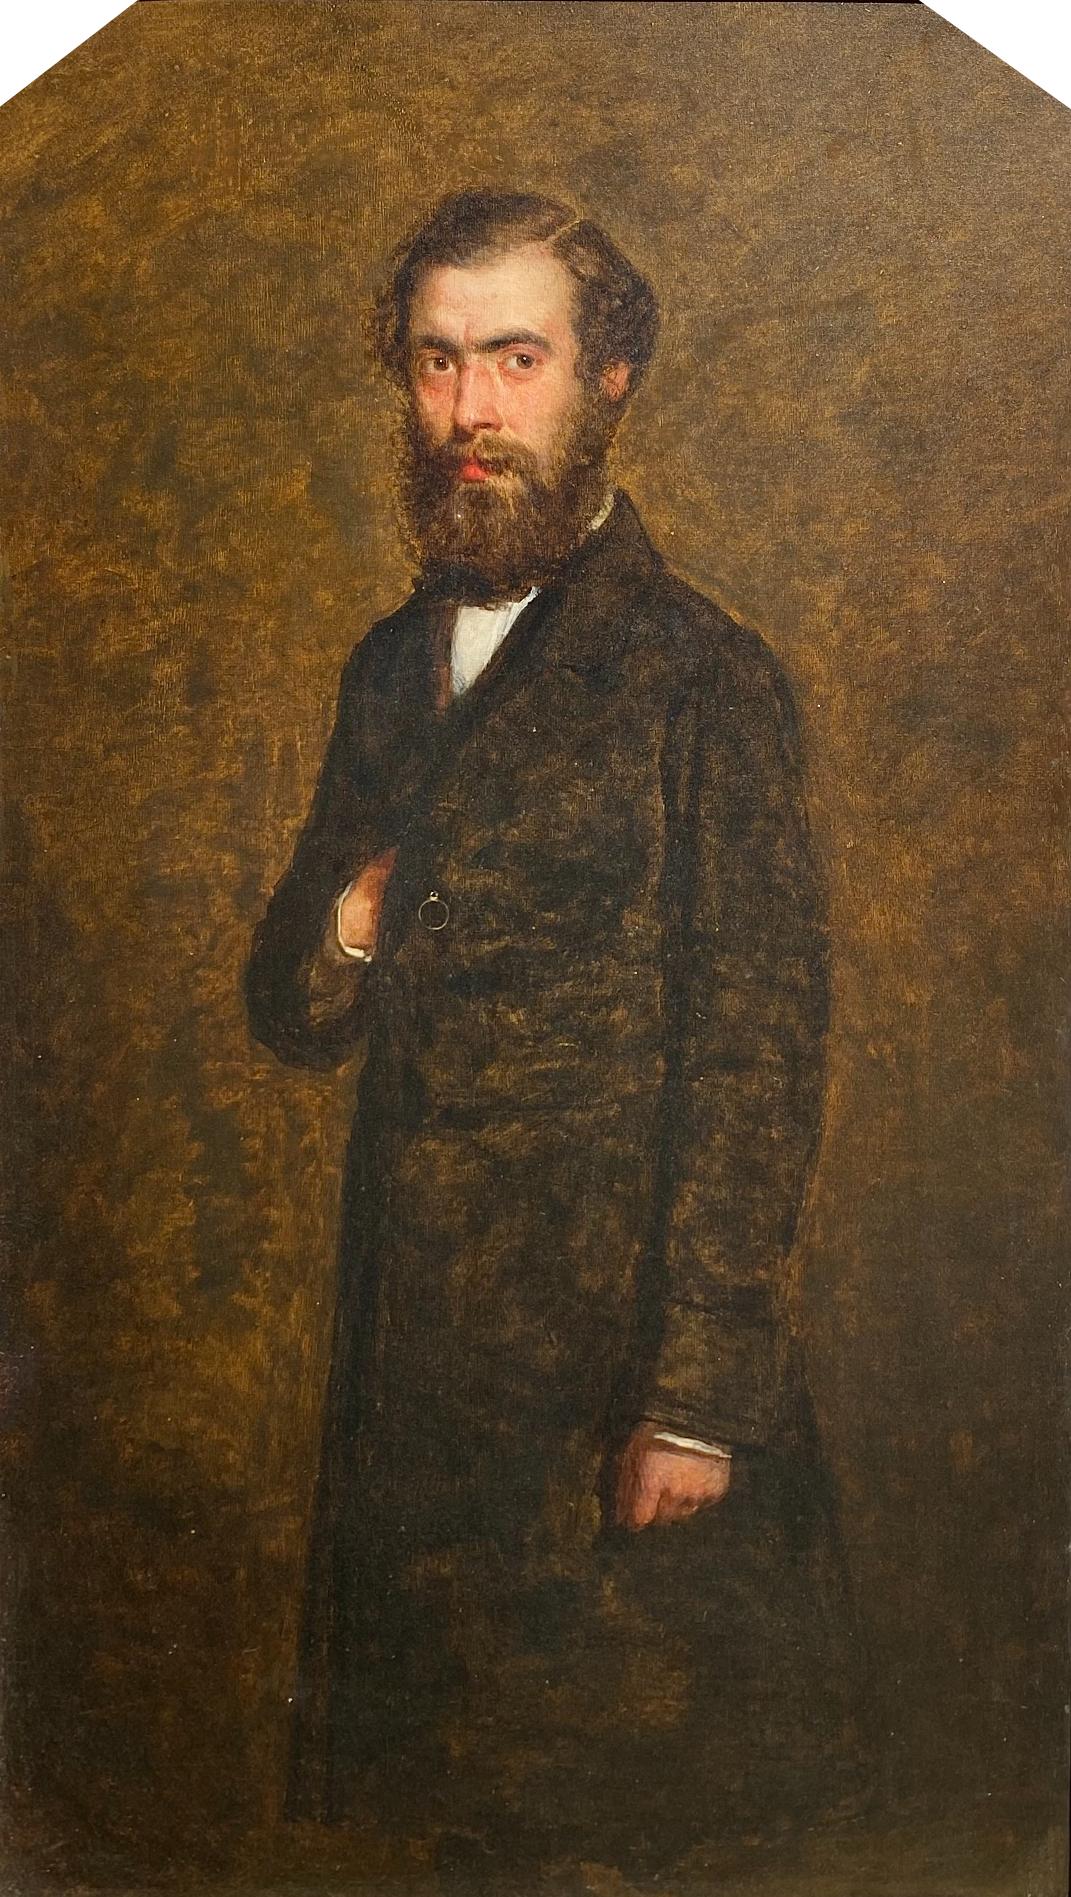 Portrait Painting John Burr - Portrait du docteur Carter, peinture à l'huile écossaise du 19ème siècle signée